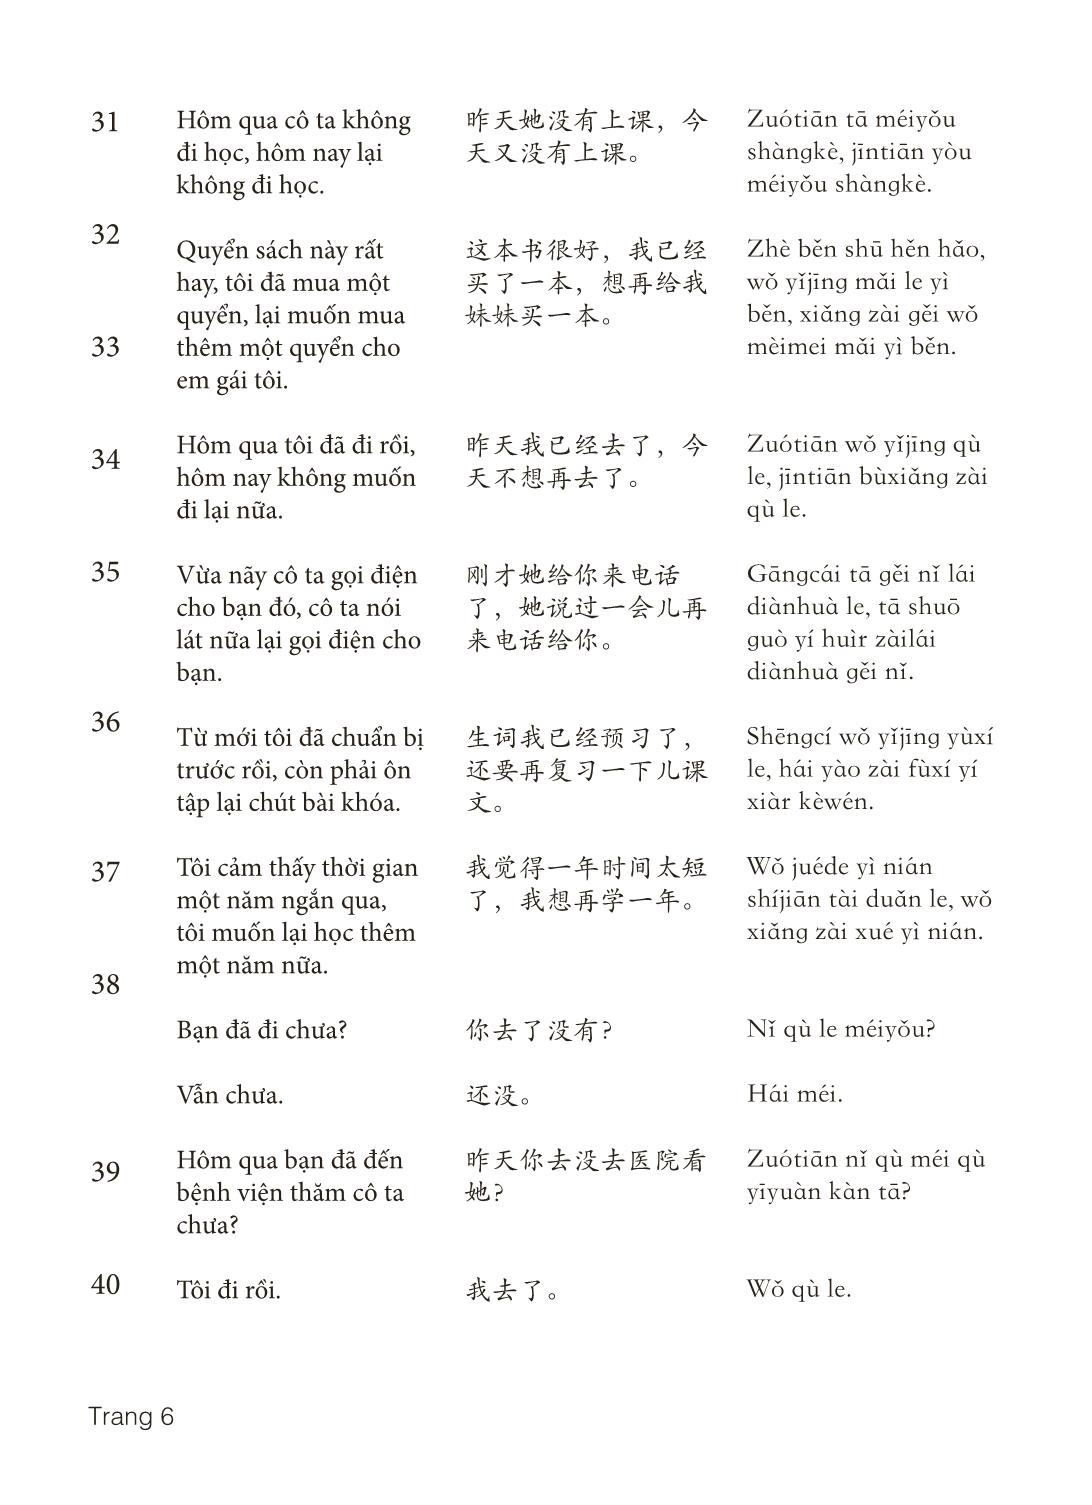 3000 Câu đàm thoại tiếng Hoa - Phần 9 trang 6